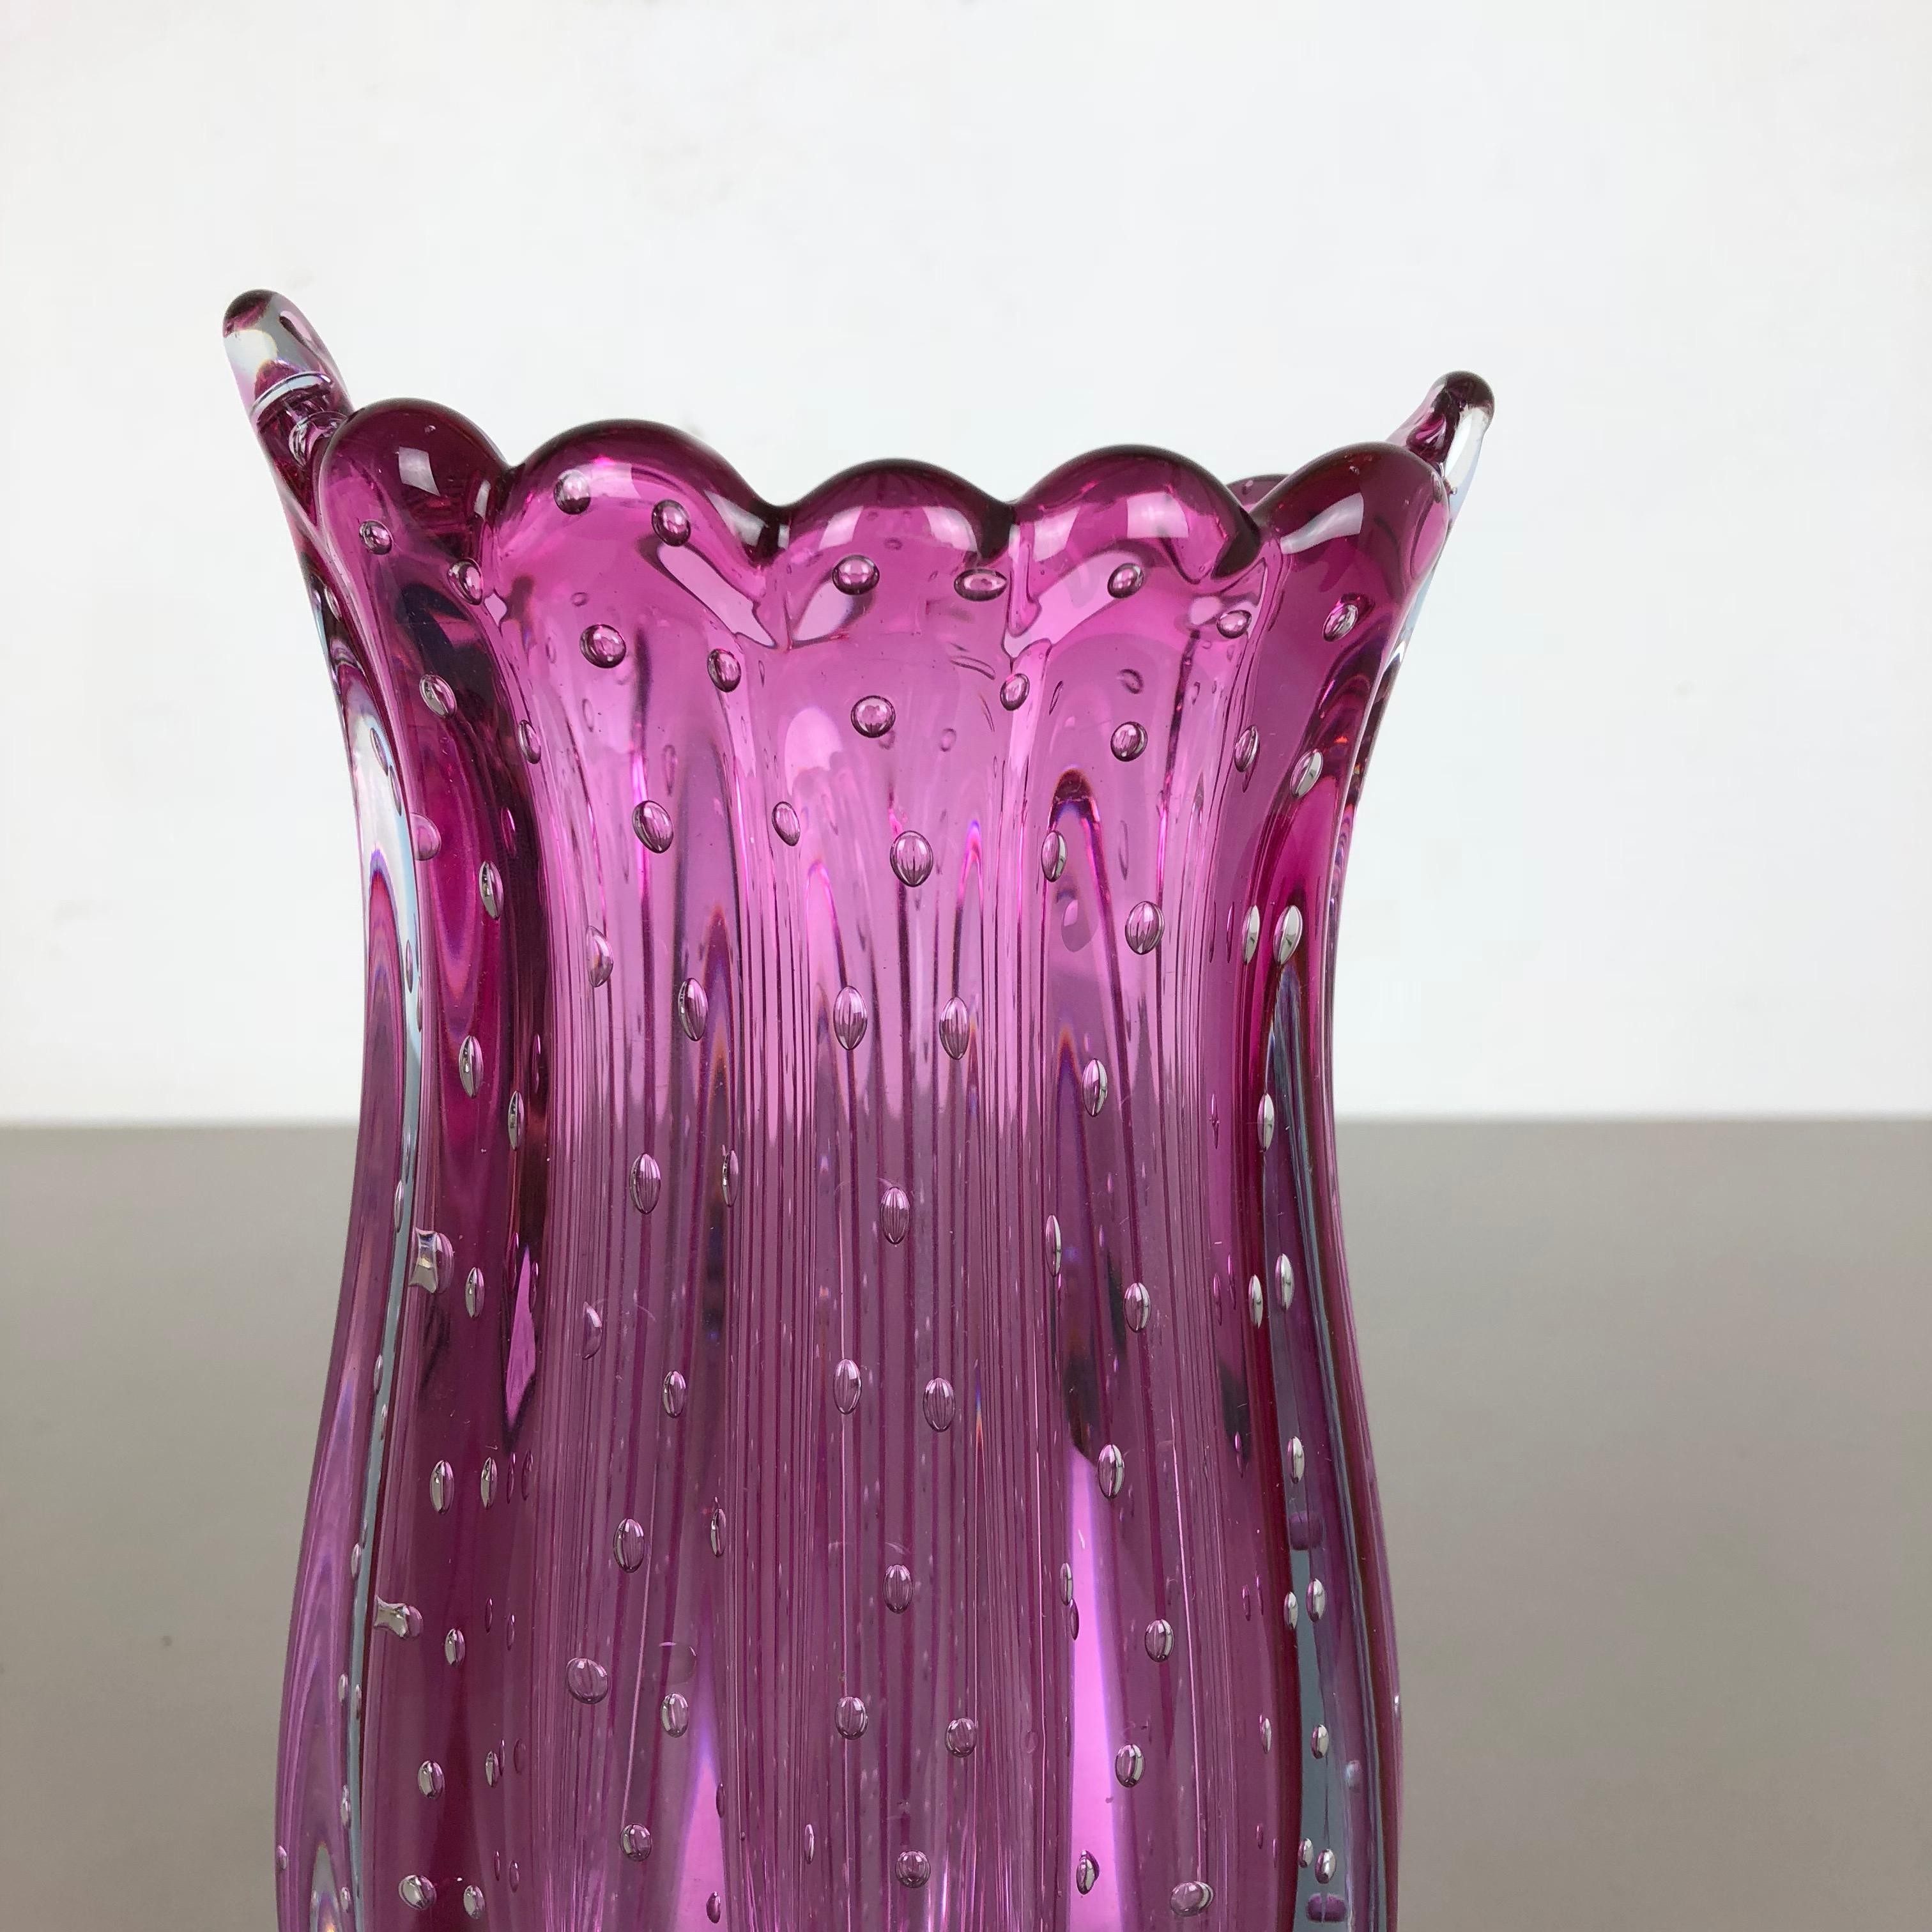 Italian Unique Bullicante Murano Glass Vase by Archimede Seguso, Italy, 1970s